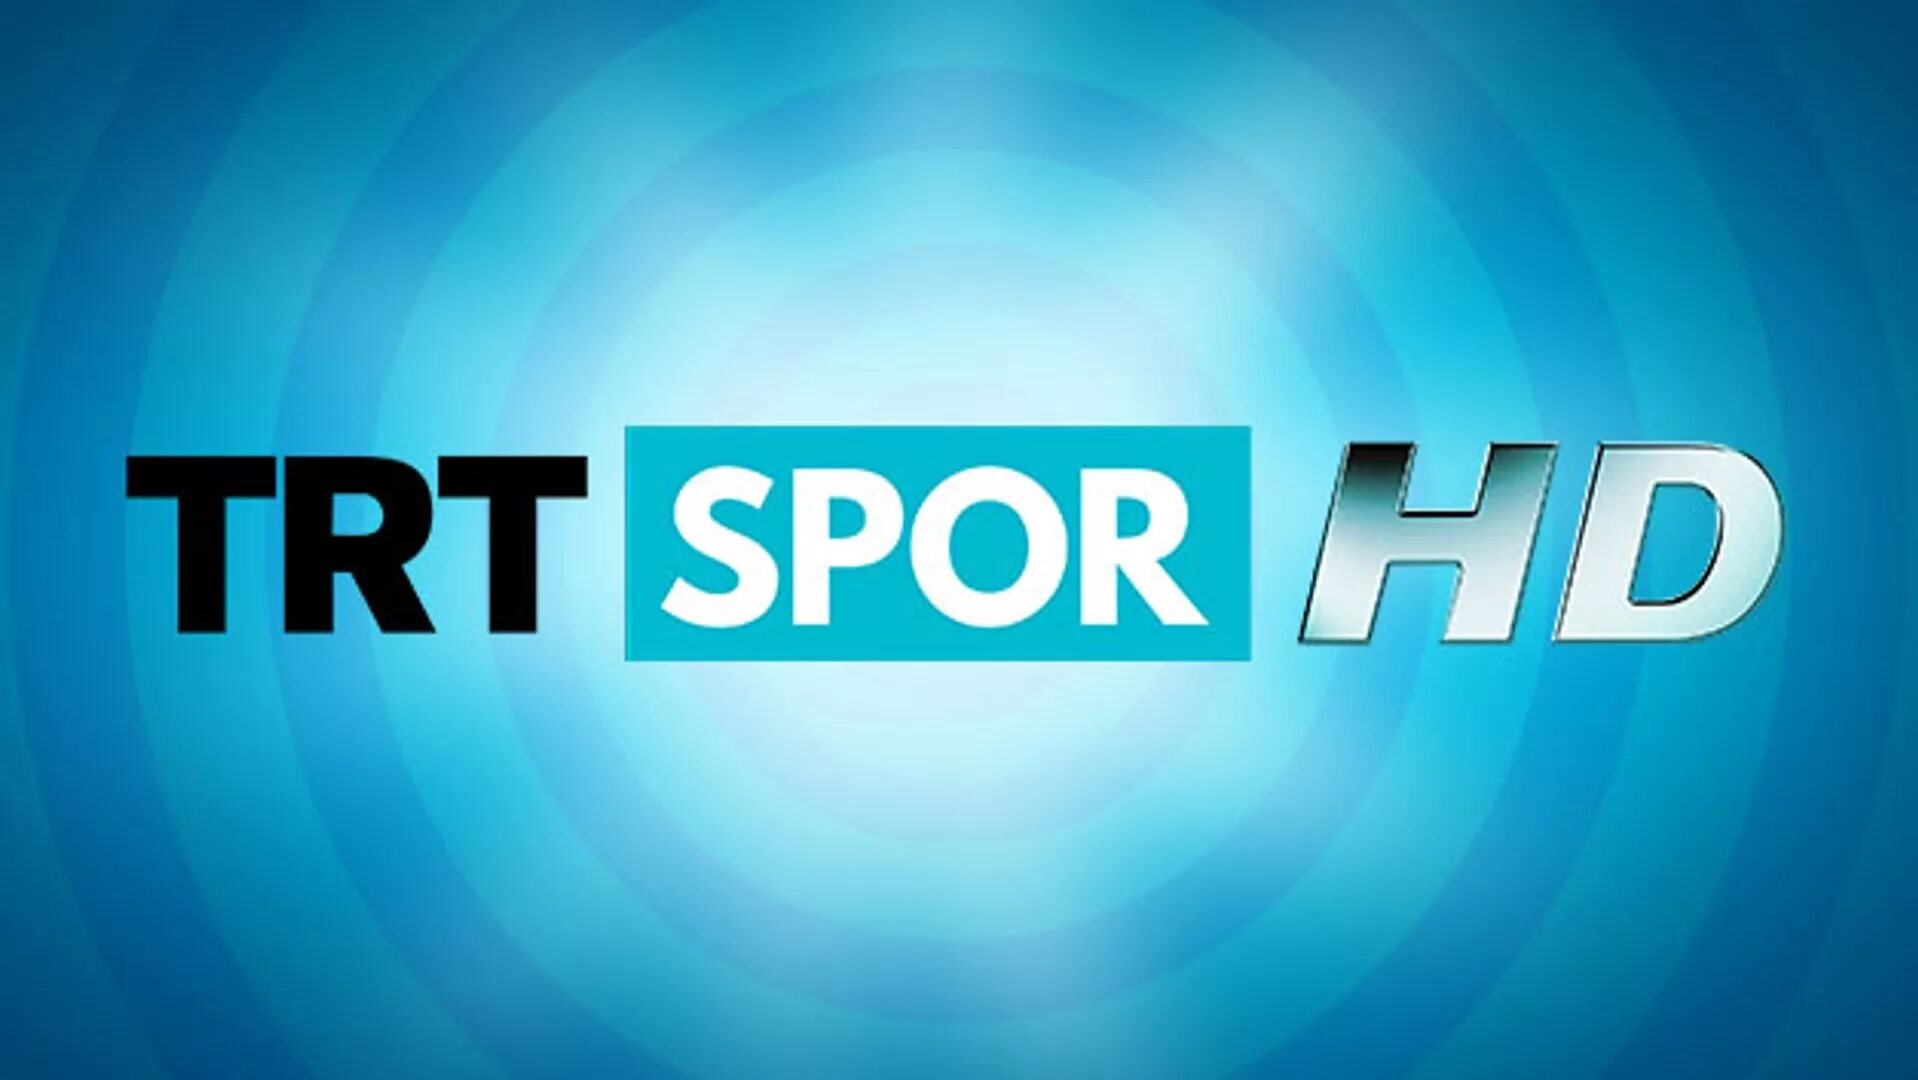 Trt3 Spor. TRT 3. TRT лого. TRT Spor HD logo.